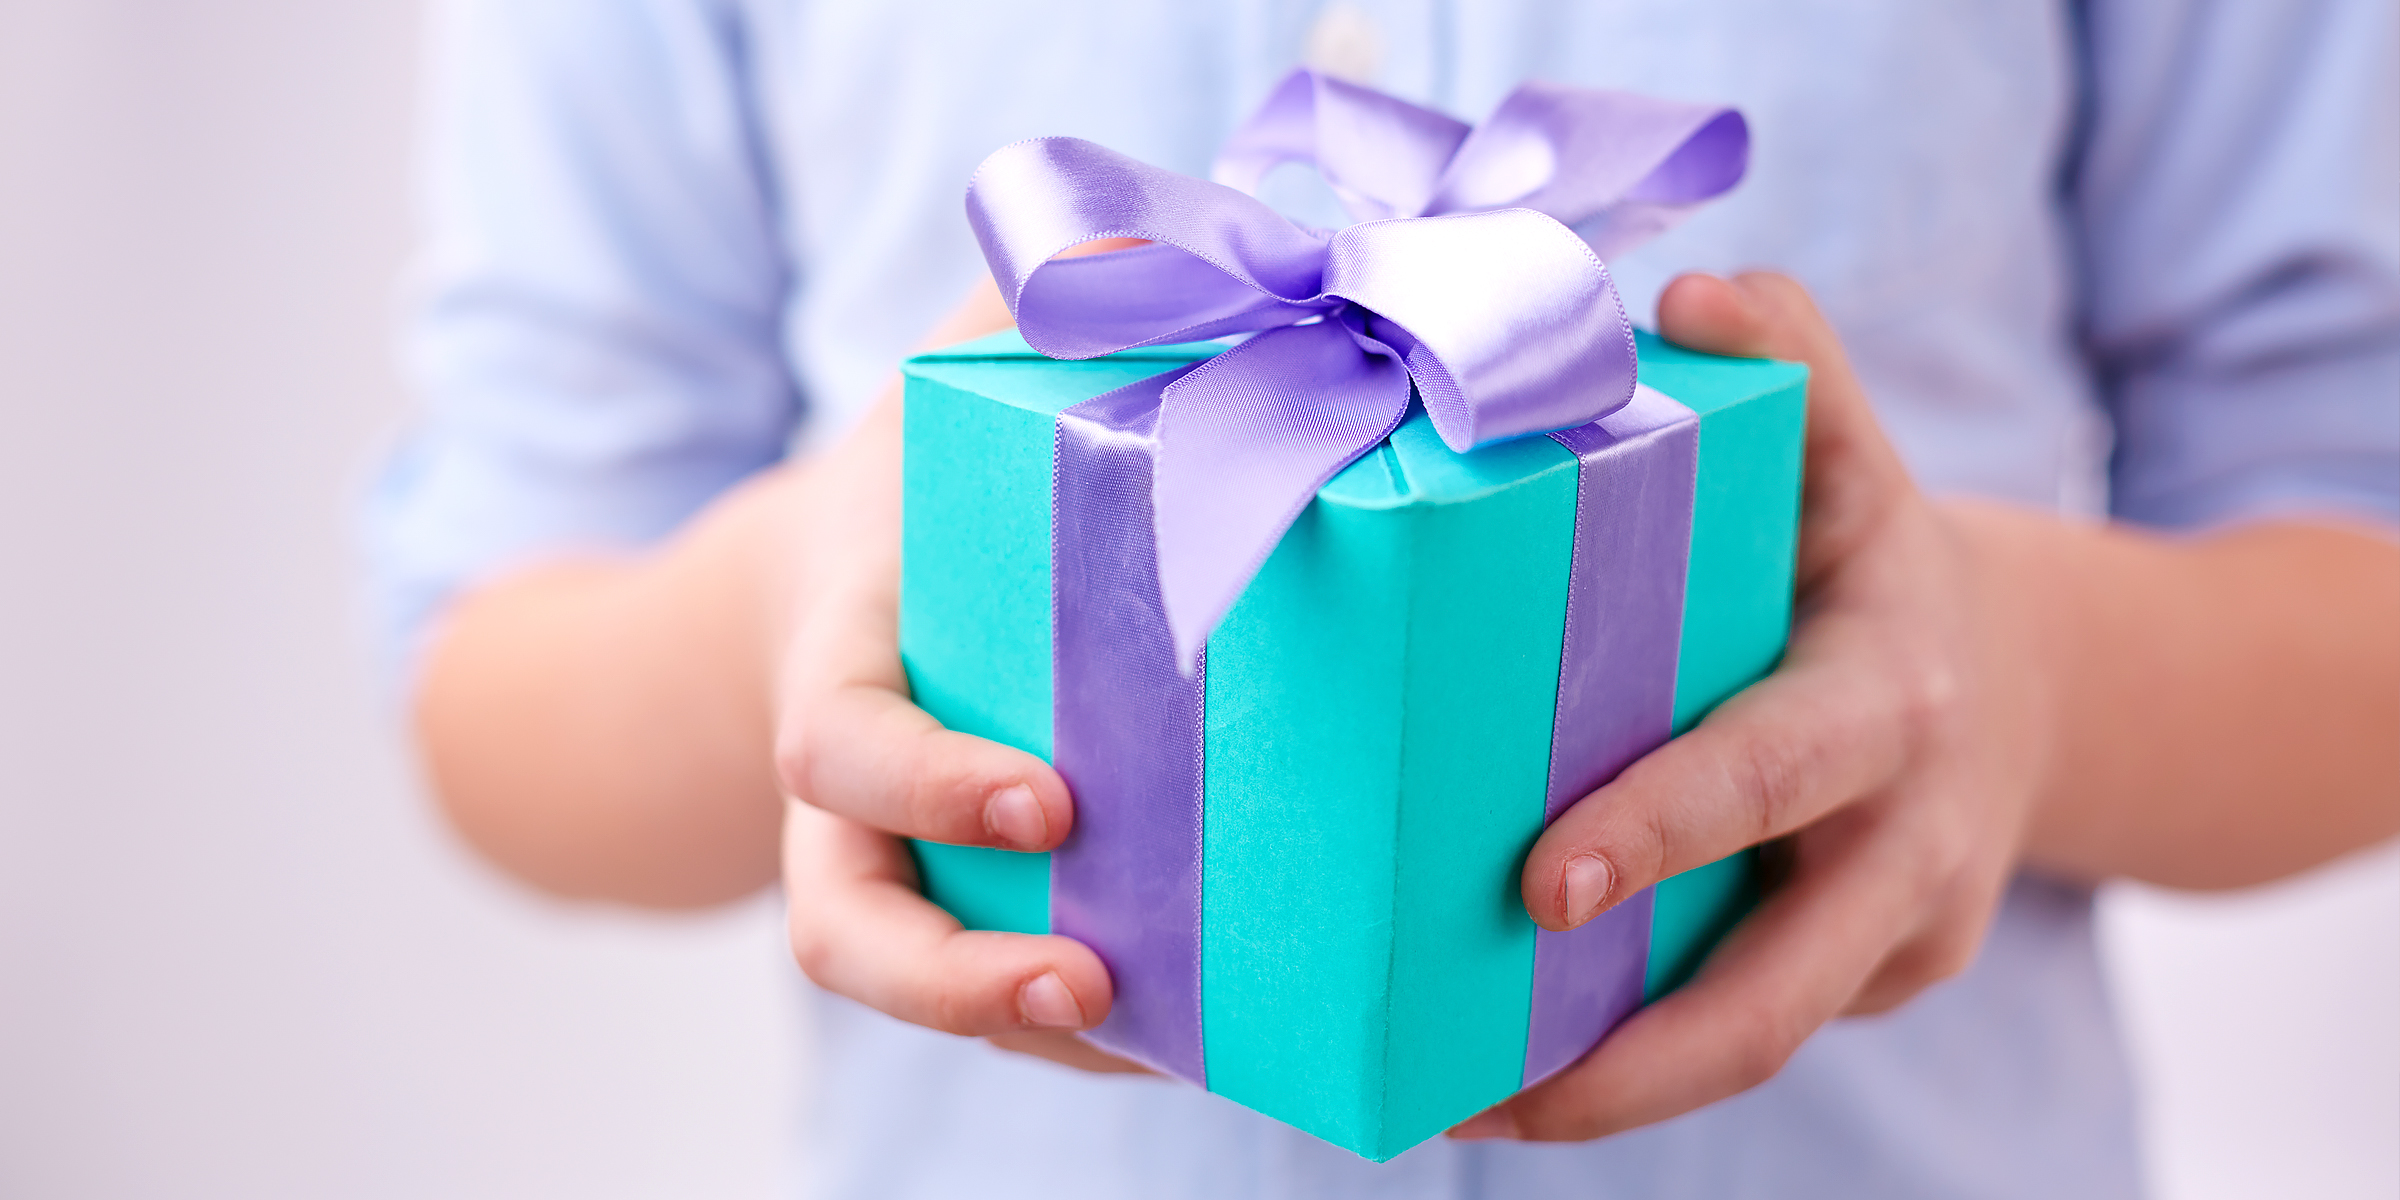 Junge mit Geschenkbox | Quelle: Shutterstock